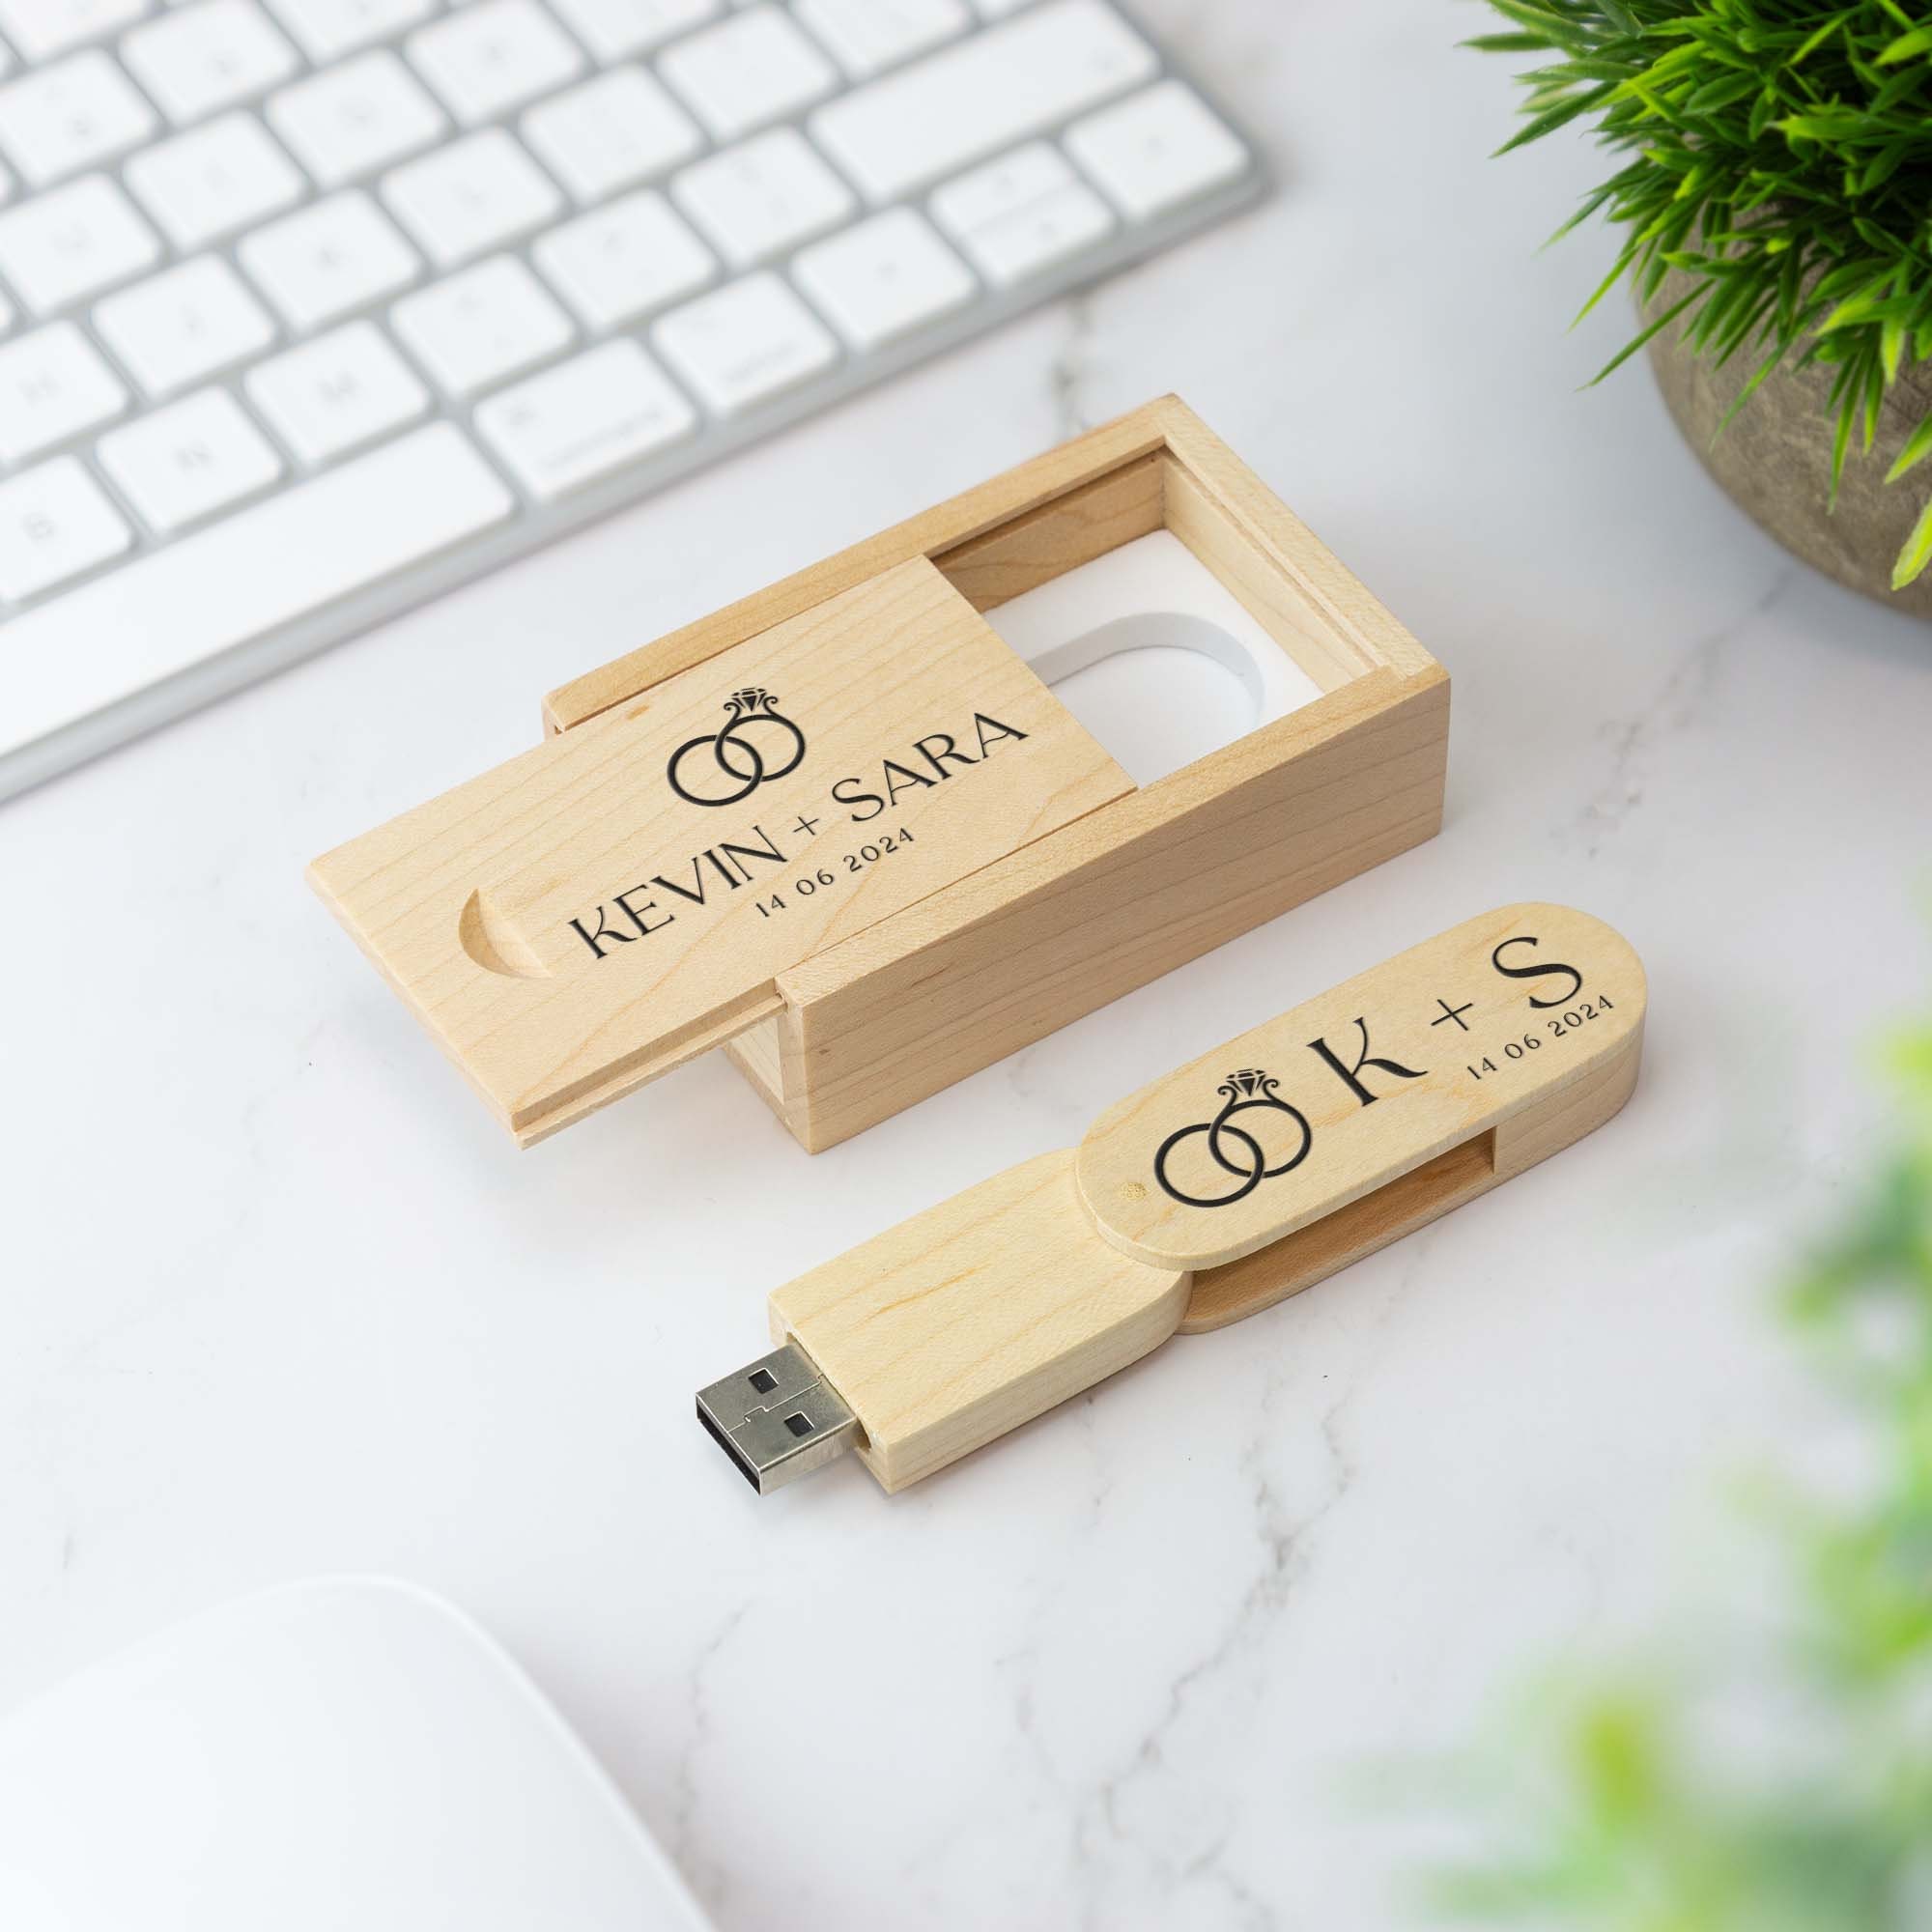 Clef USB Bois, Super Originale - Cadeau Bureau